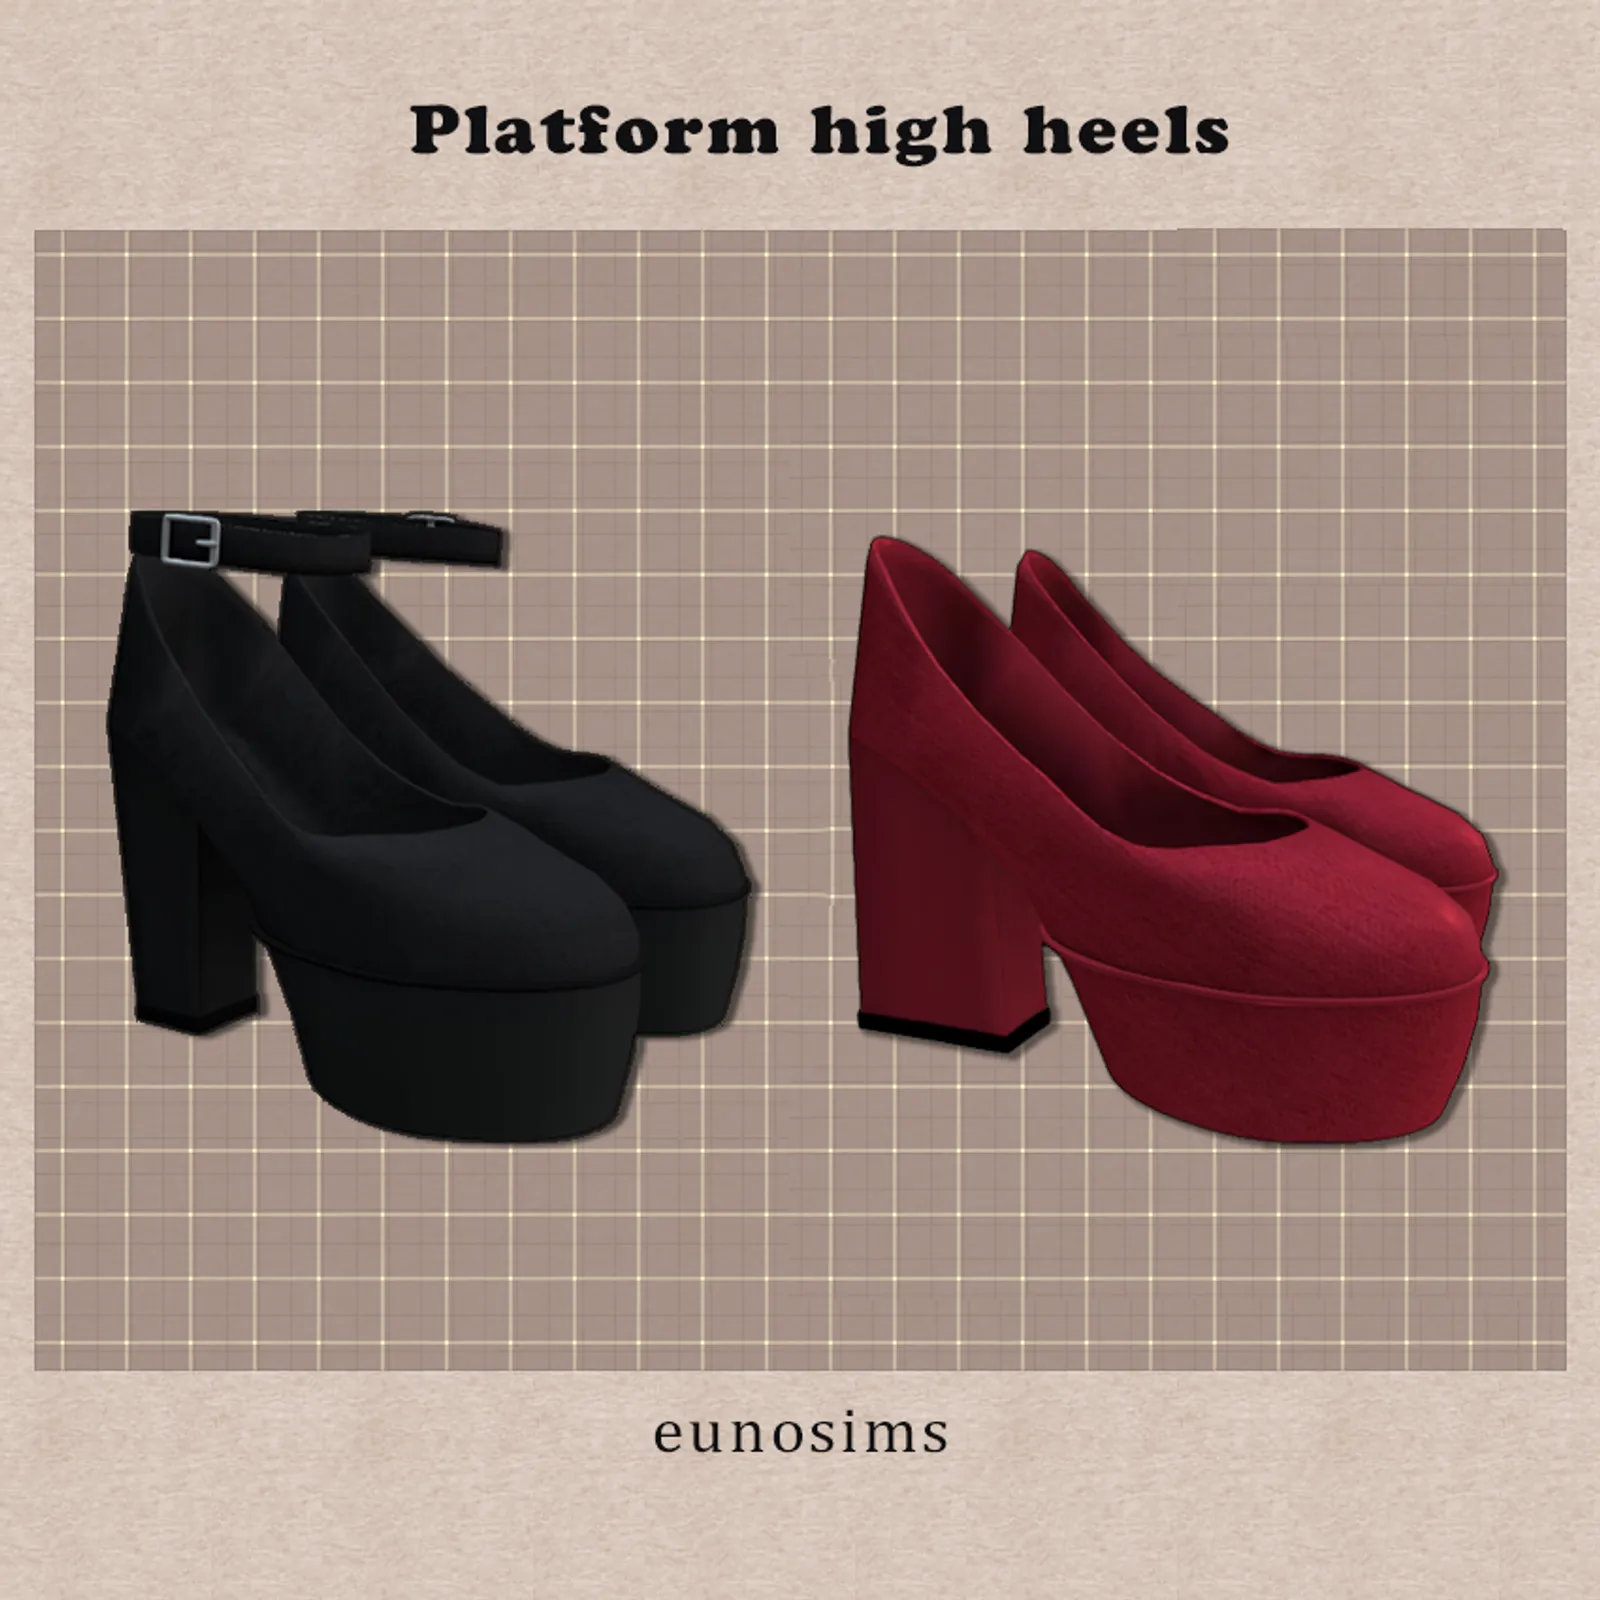 Platform high heels